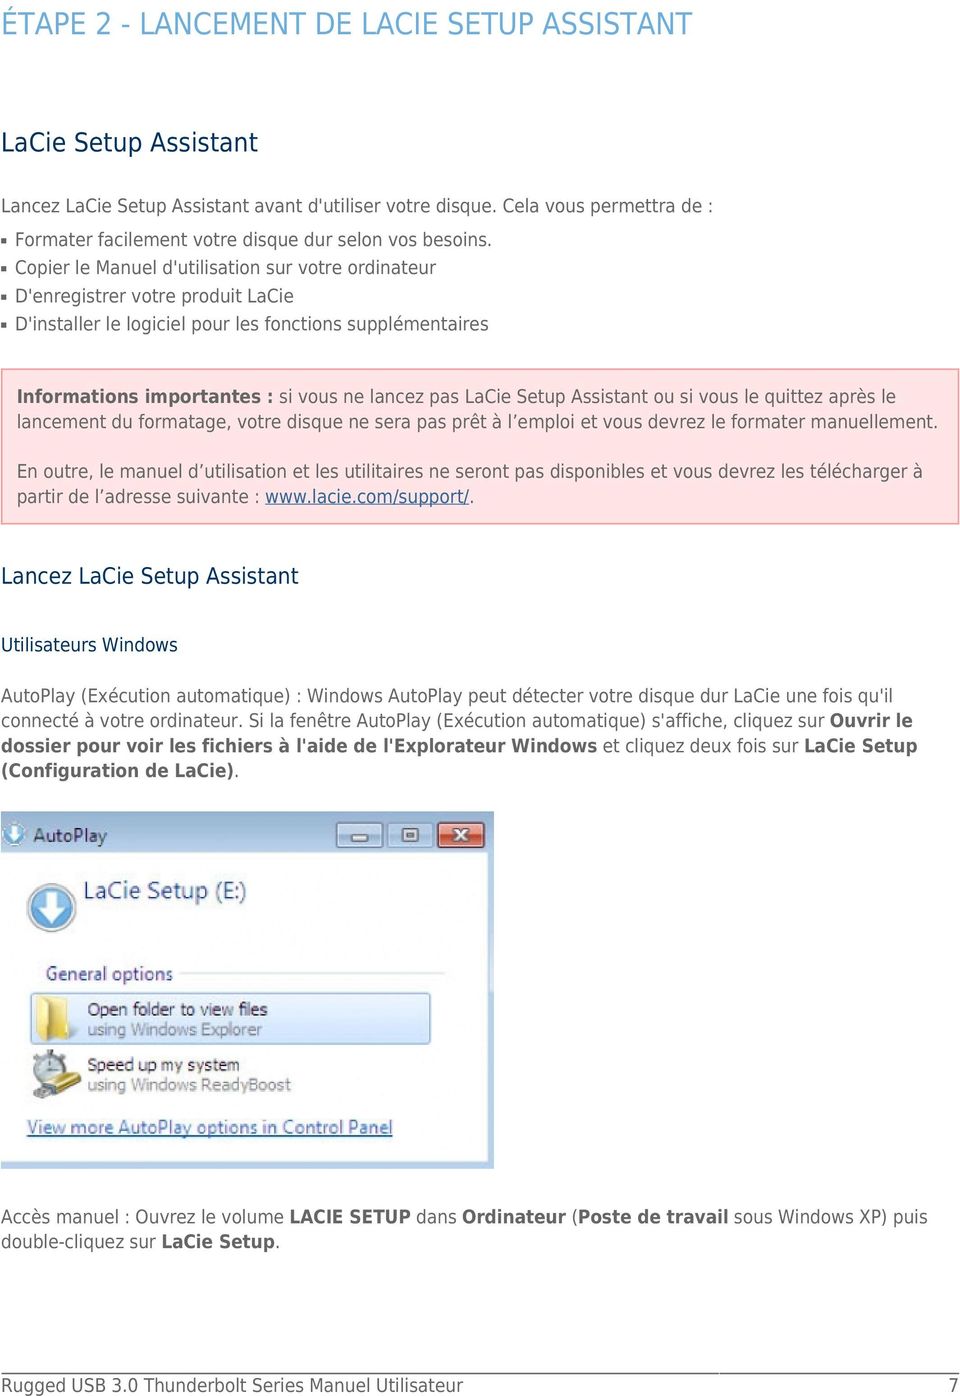 Copier le Manuel d'utilisation sur votre ordinateur D'enregistrer votre produit LaCie D'installer le logiciel pour les fonctions supplémentaires Informations importantes : si vous ne lancez pas LaCie